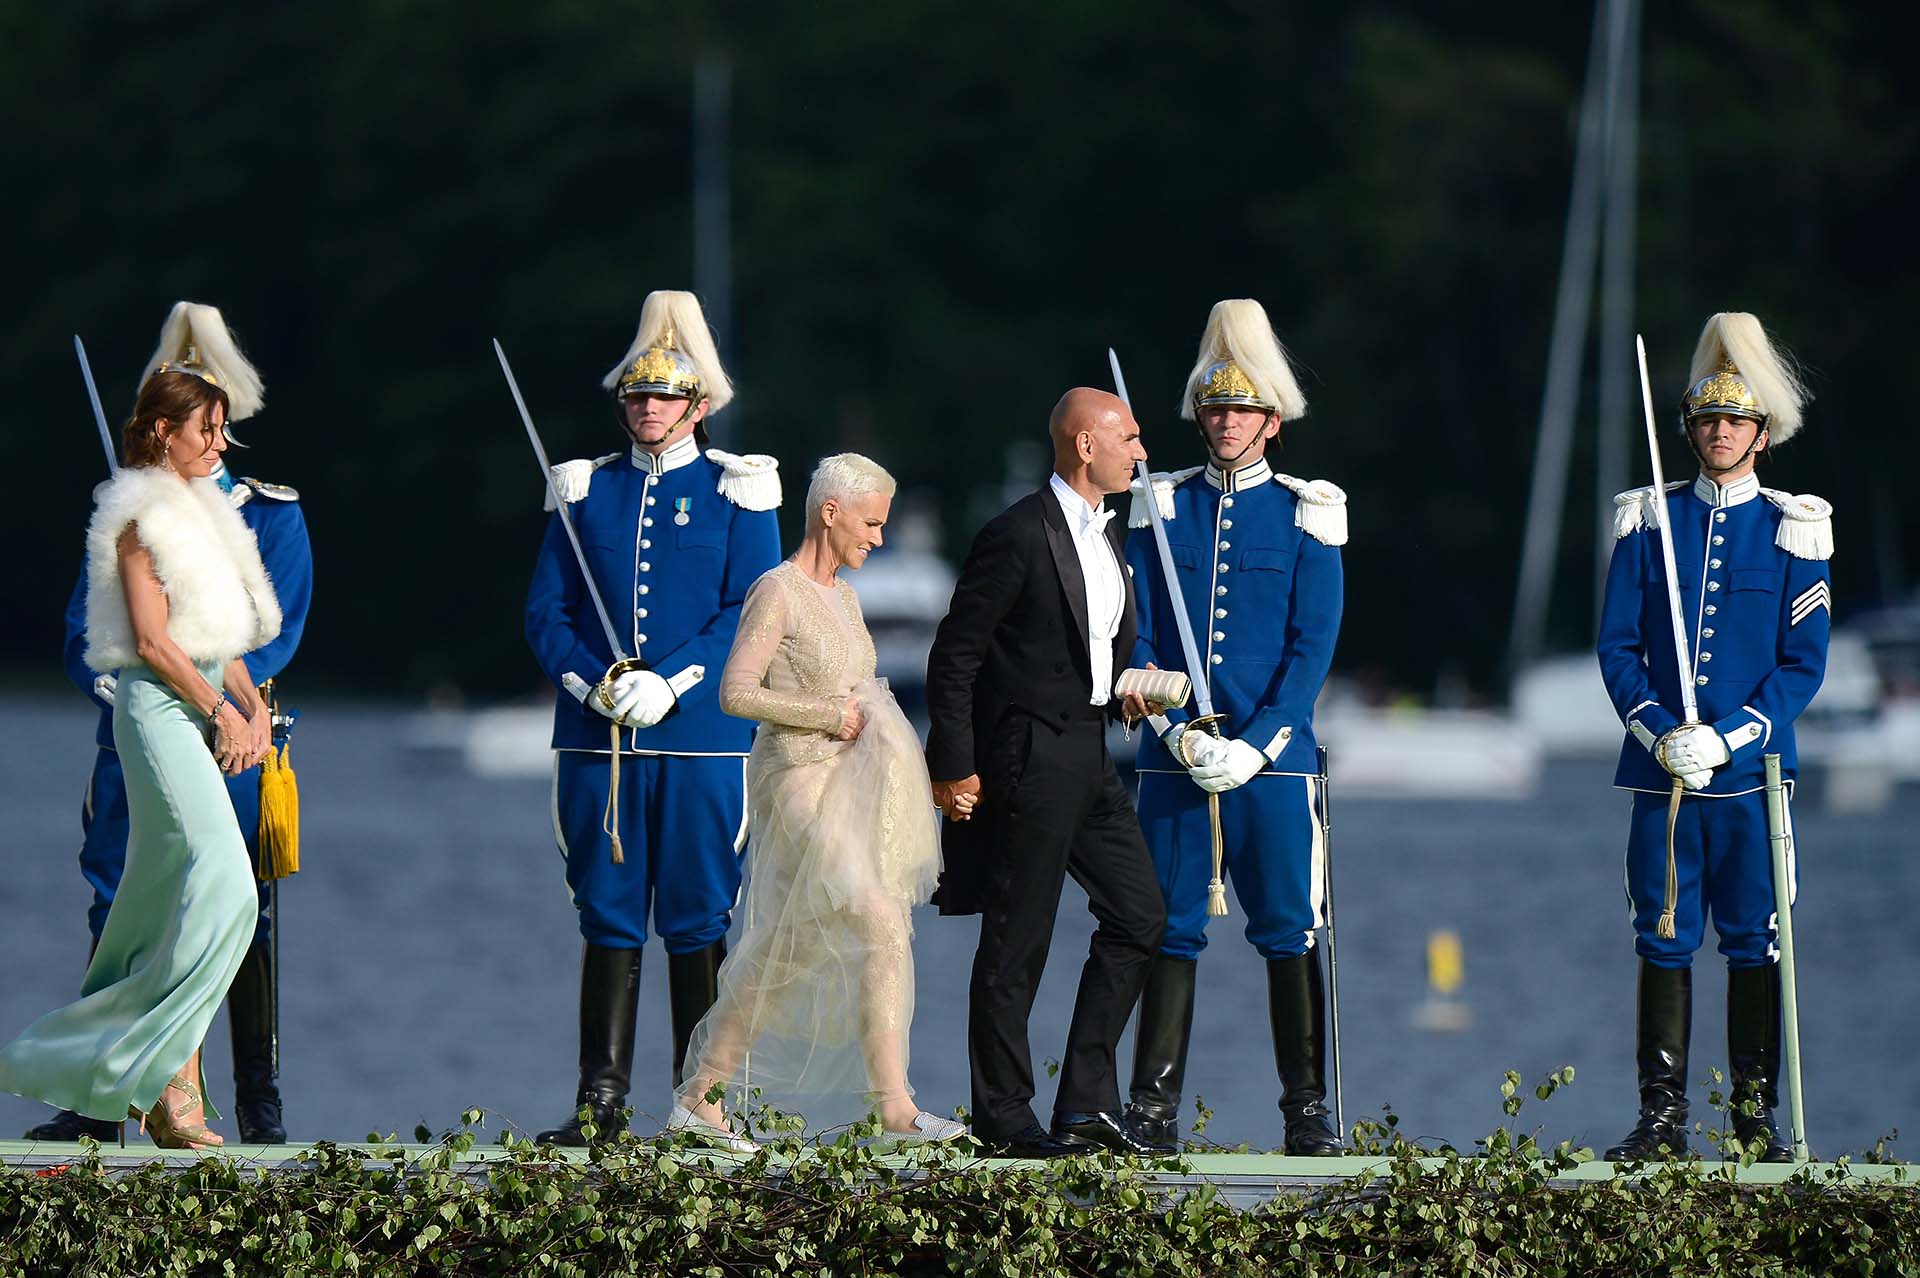 Marie Fredriksson y su marido Micke Bolyos en la boda de la princesa Magdalena de Suecia (Pascal Le Segretain/Getty Images)